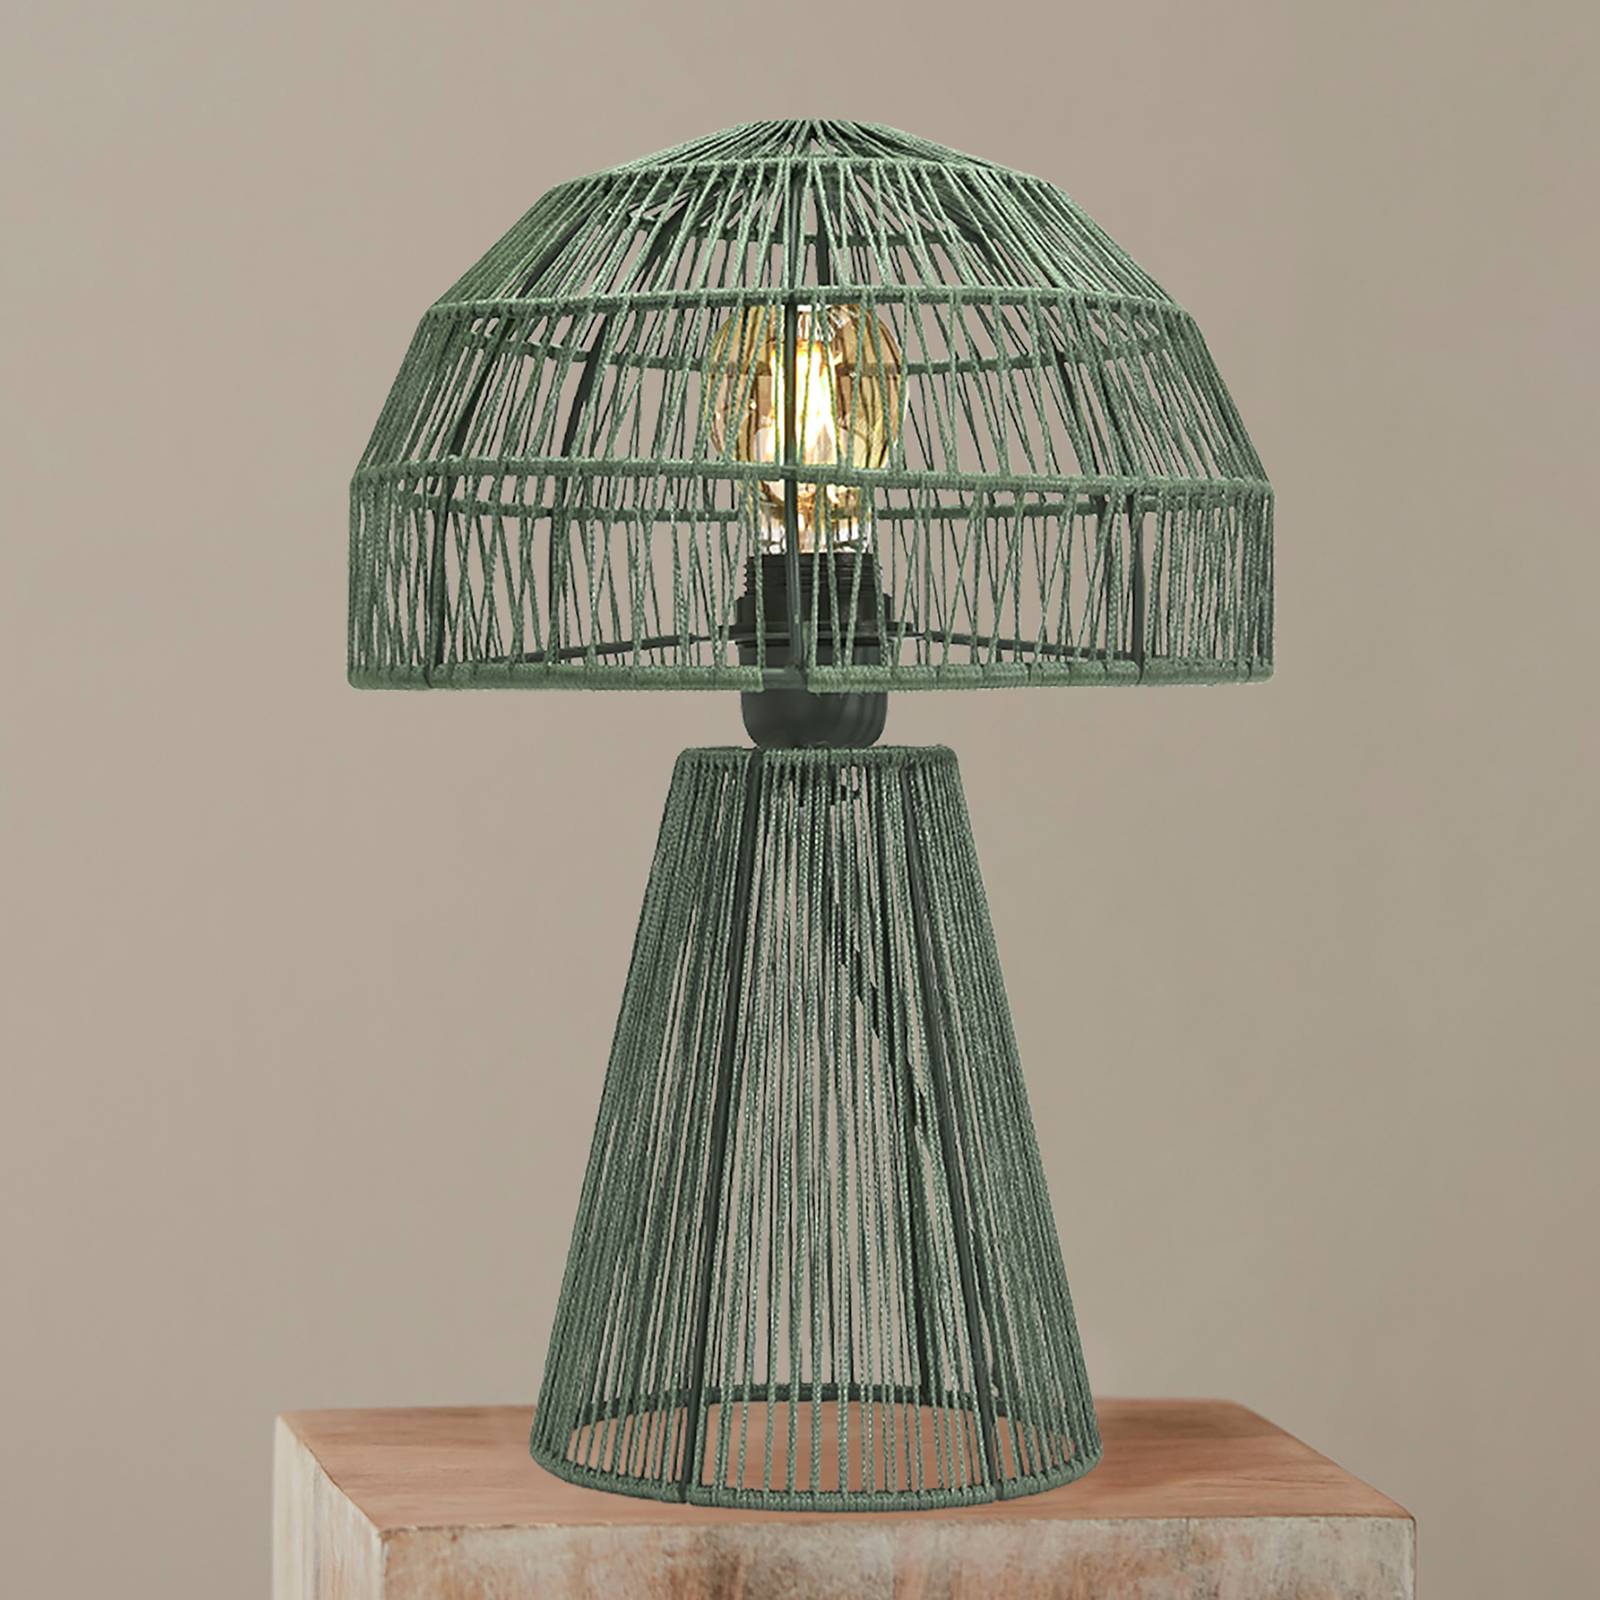 E-shop PR Home Porcini stolová lampa 37cm šalviová zelená